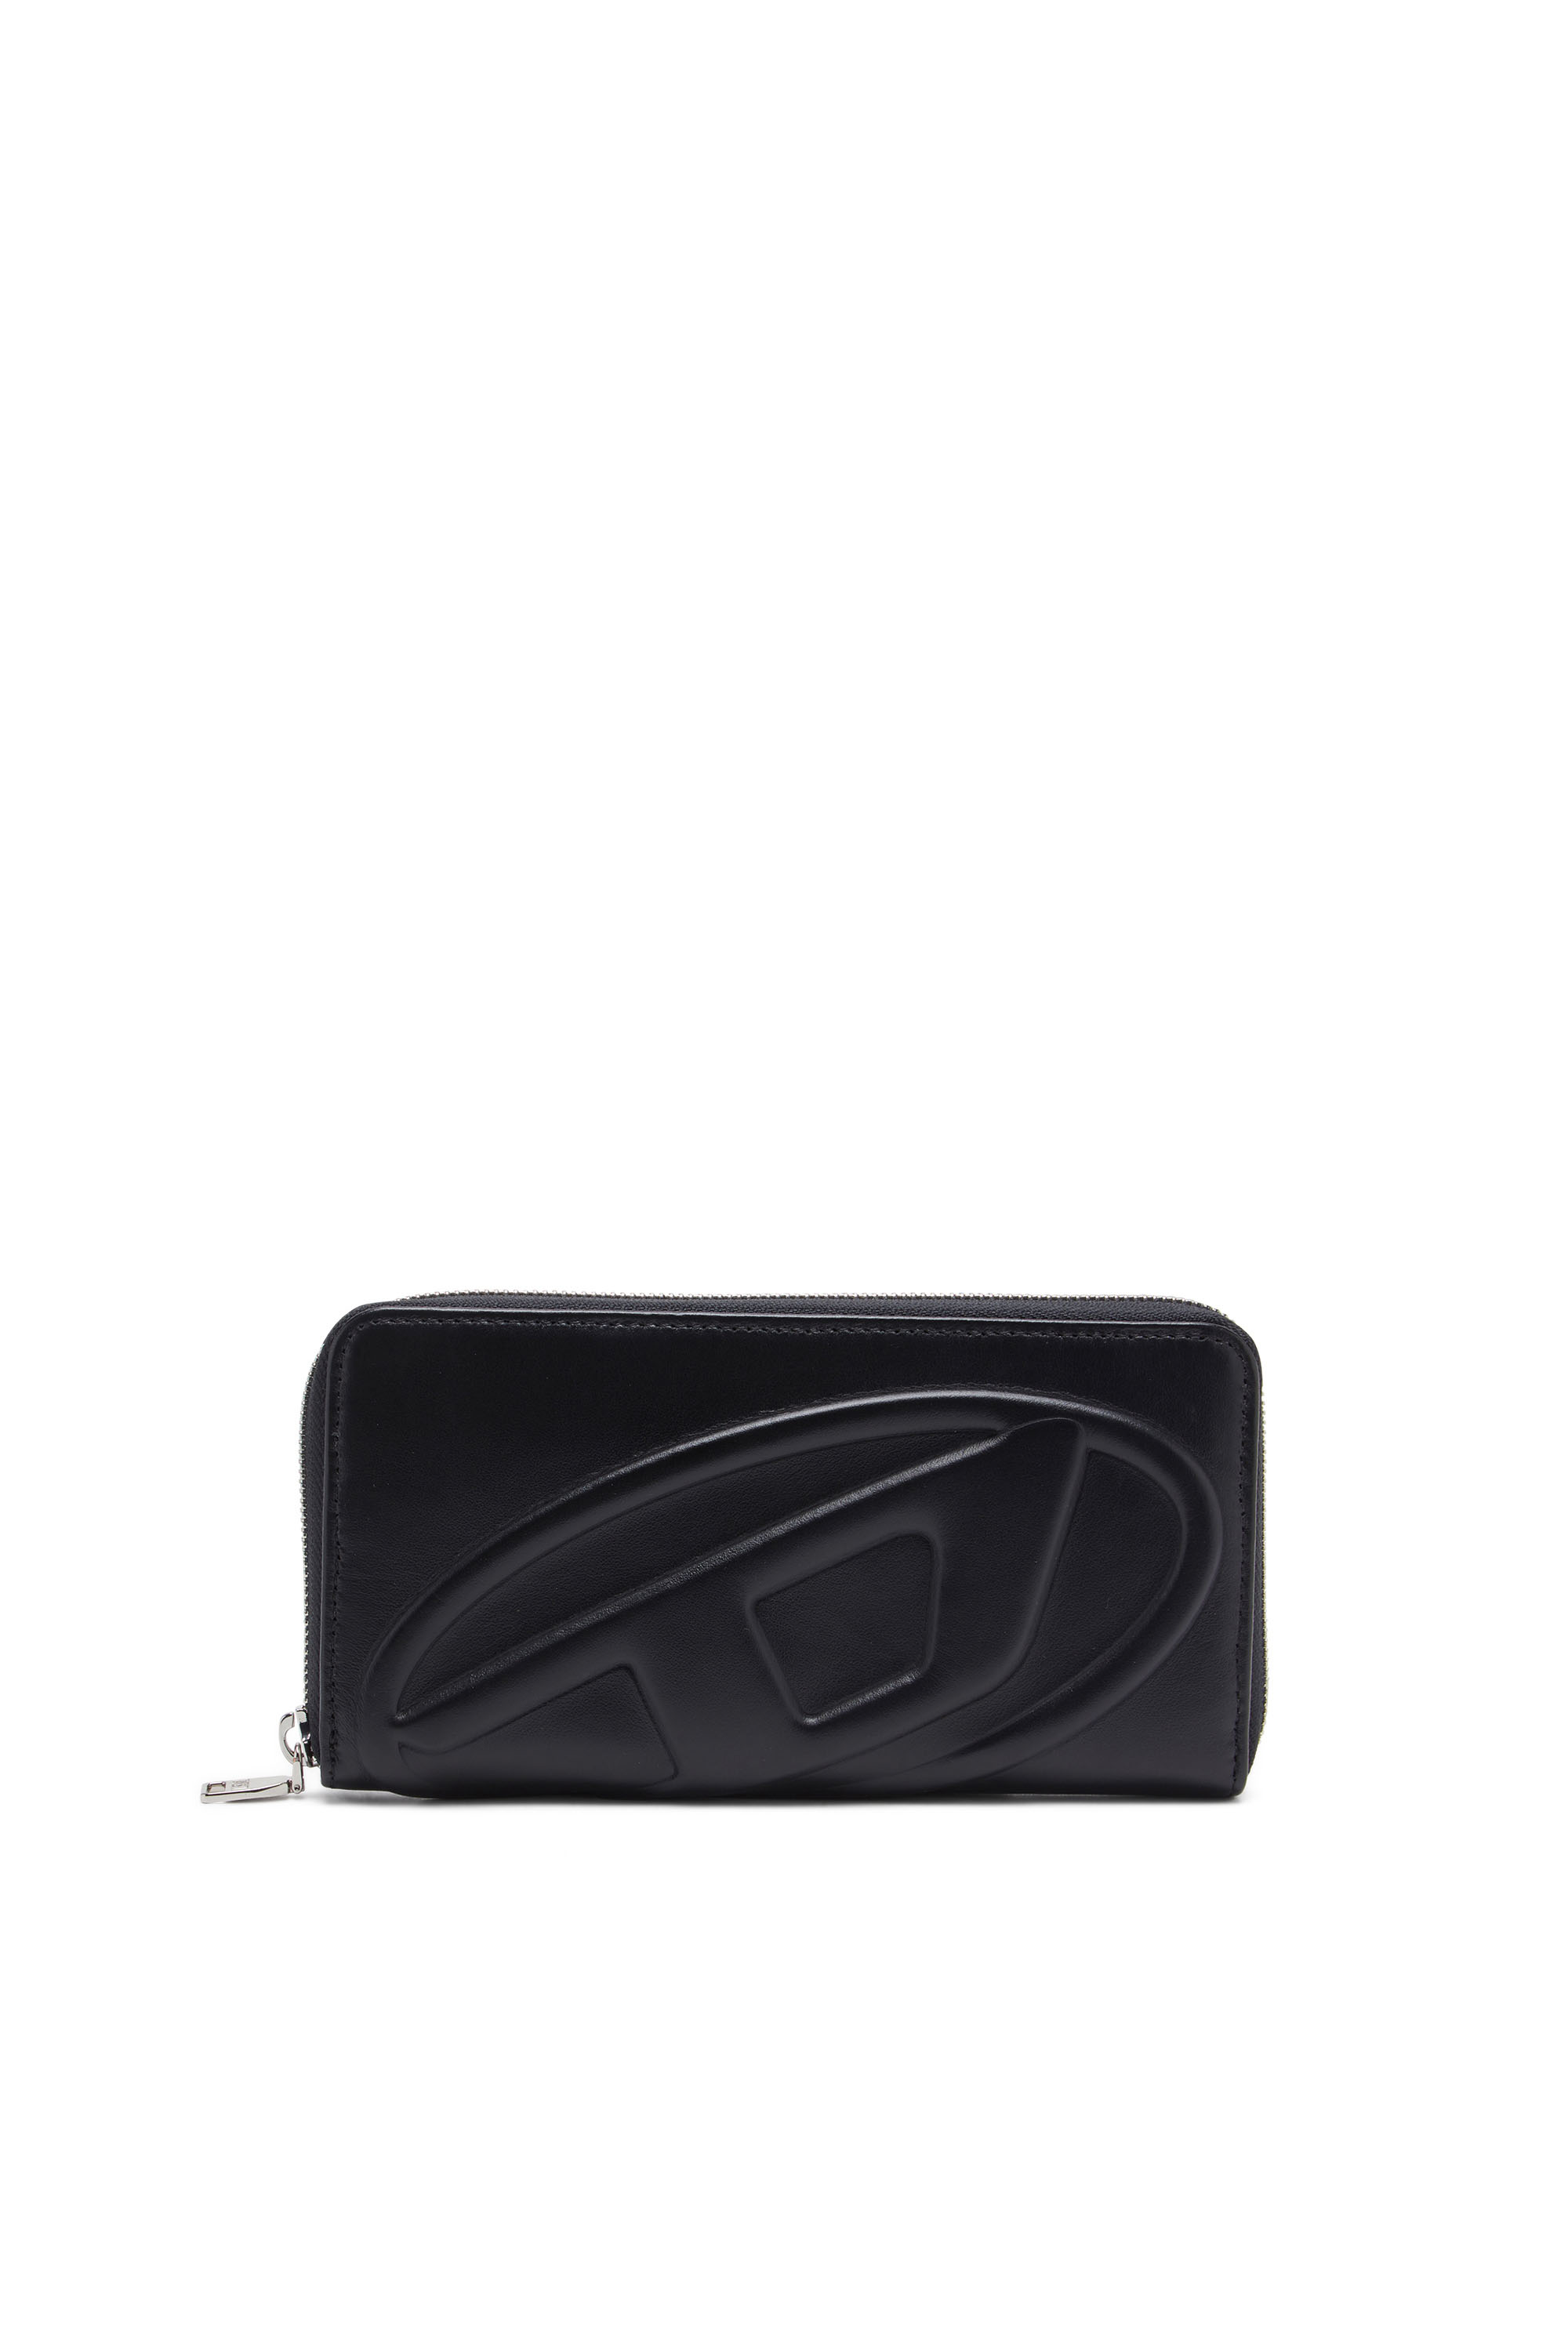 Diesel - Langes Portemonnaie mit Reißverschluss und Logo-Prägung - Portemonnaies Zip-Around - Damen - Schwarz